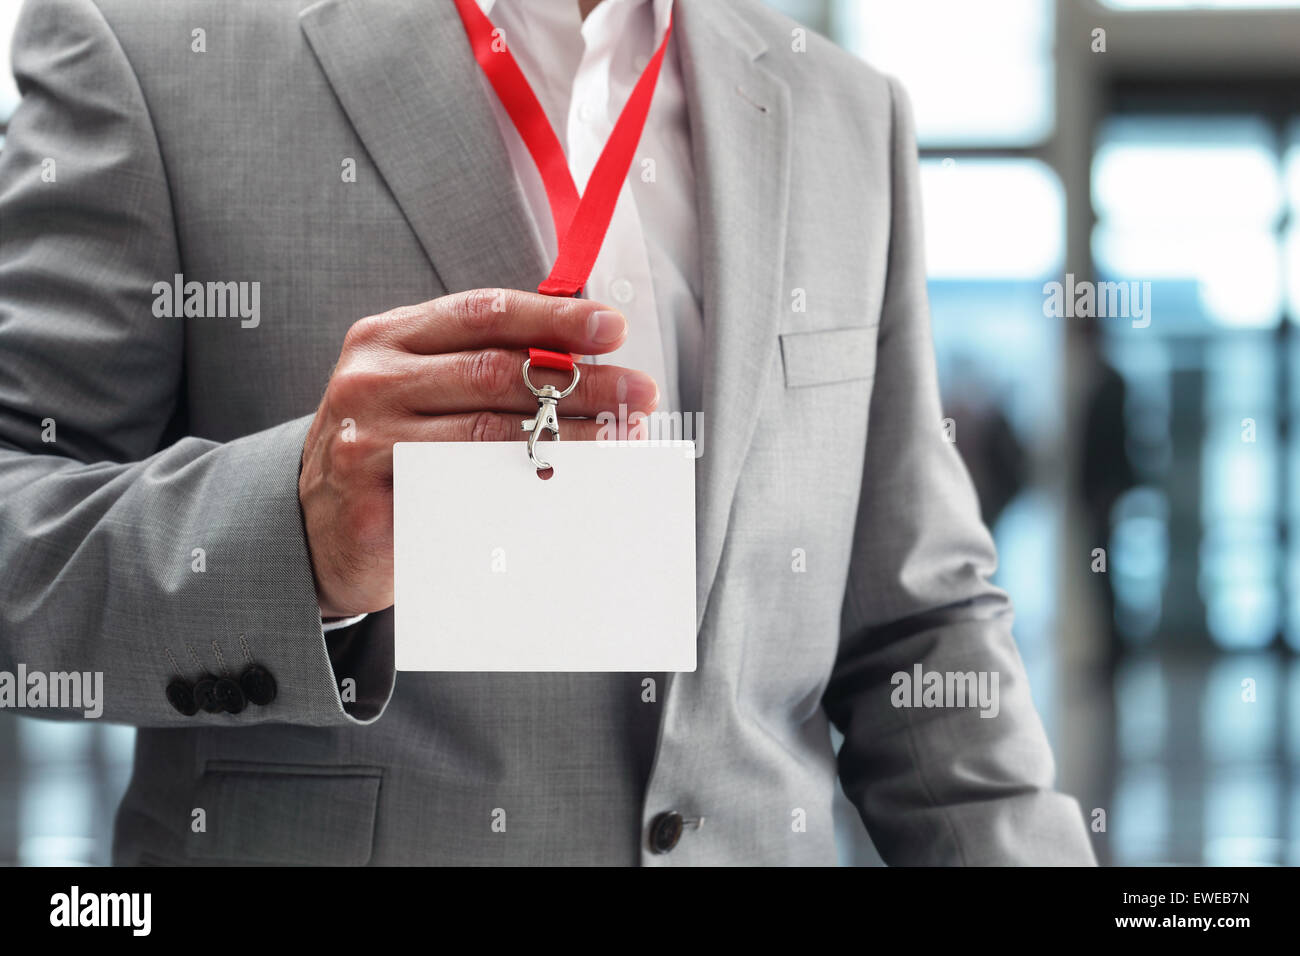 Businessman holding blank badge Banque D'Images